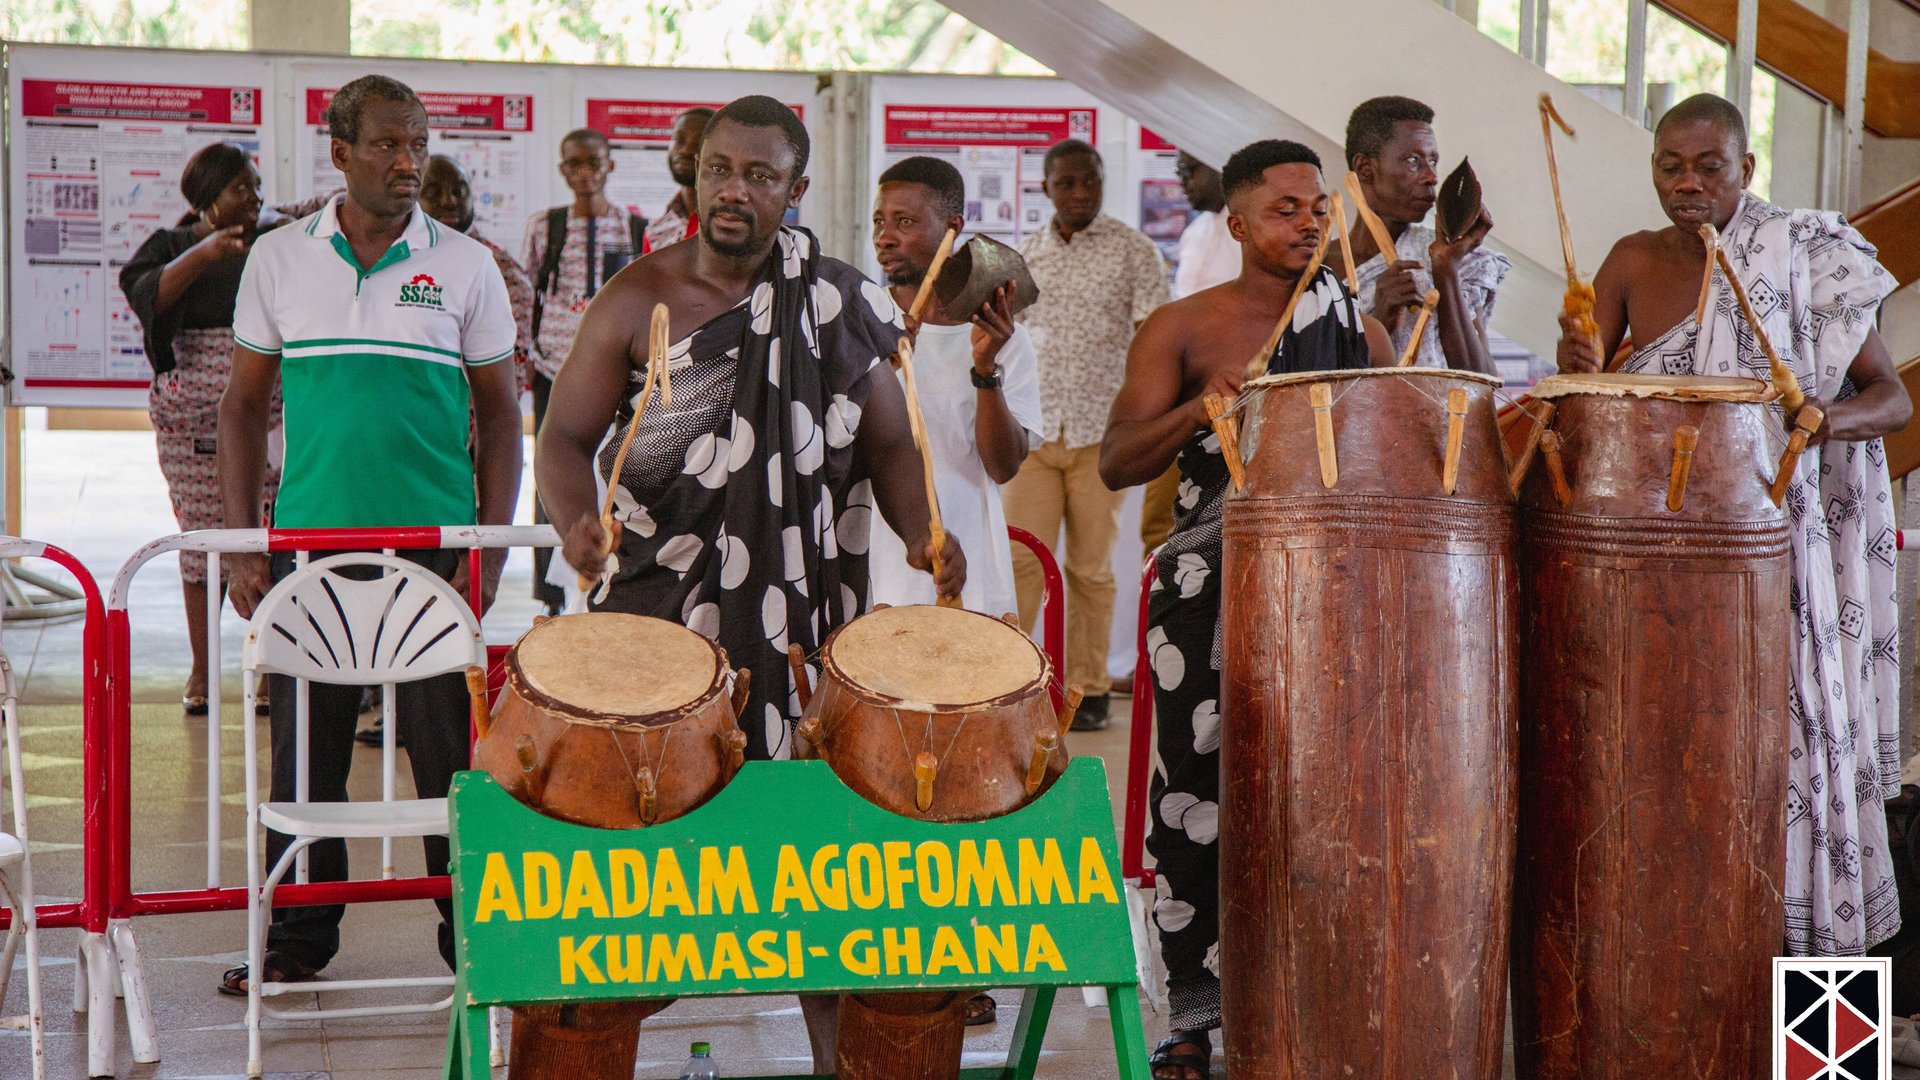 Das Bild zeigt eine traditionelle ghanaische Trommelgruppe, die die Ankunft des Königs ankündigt.